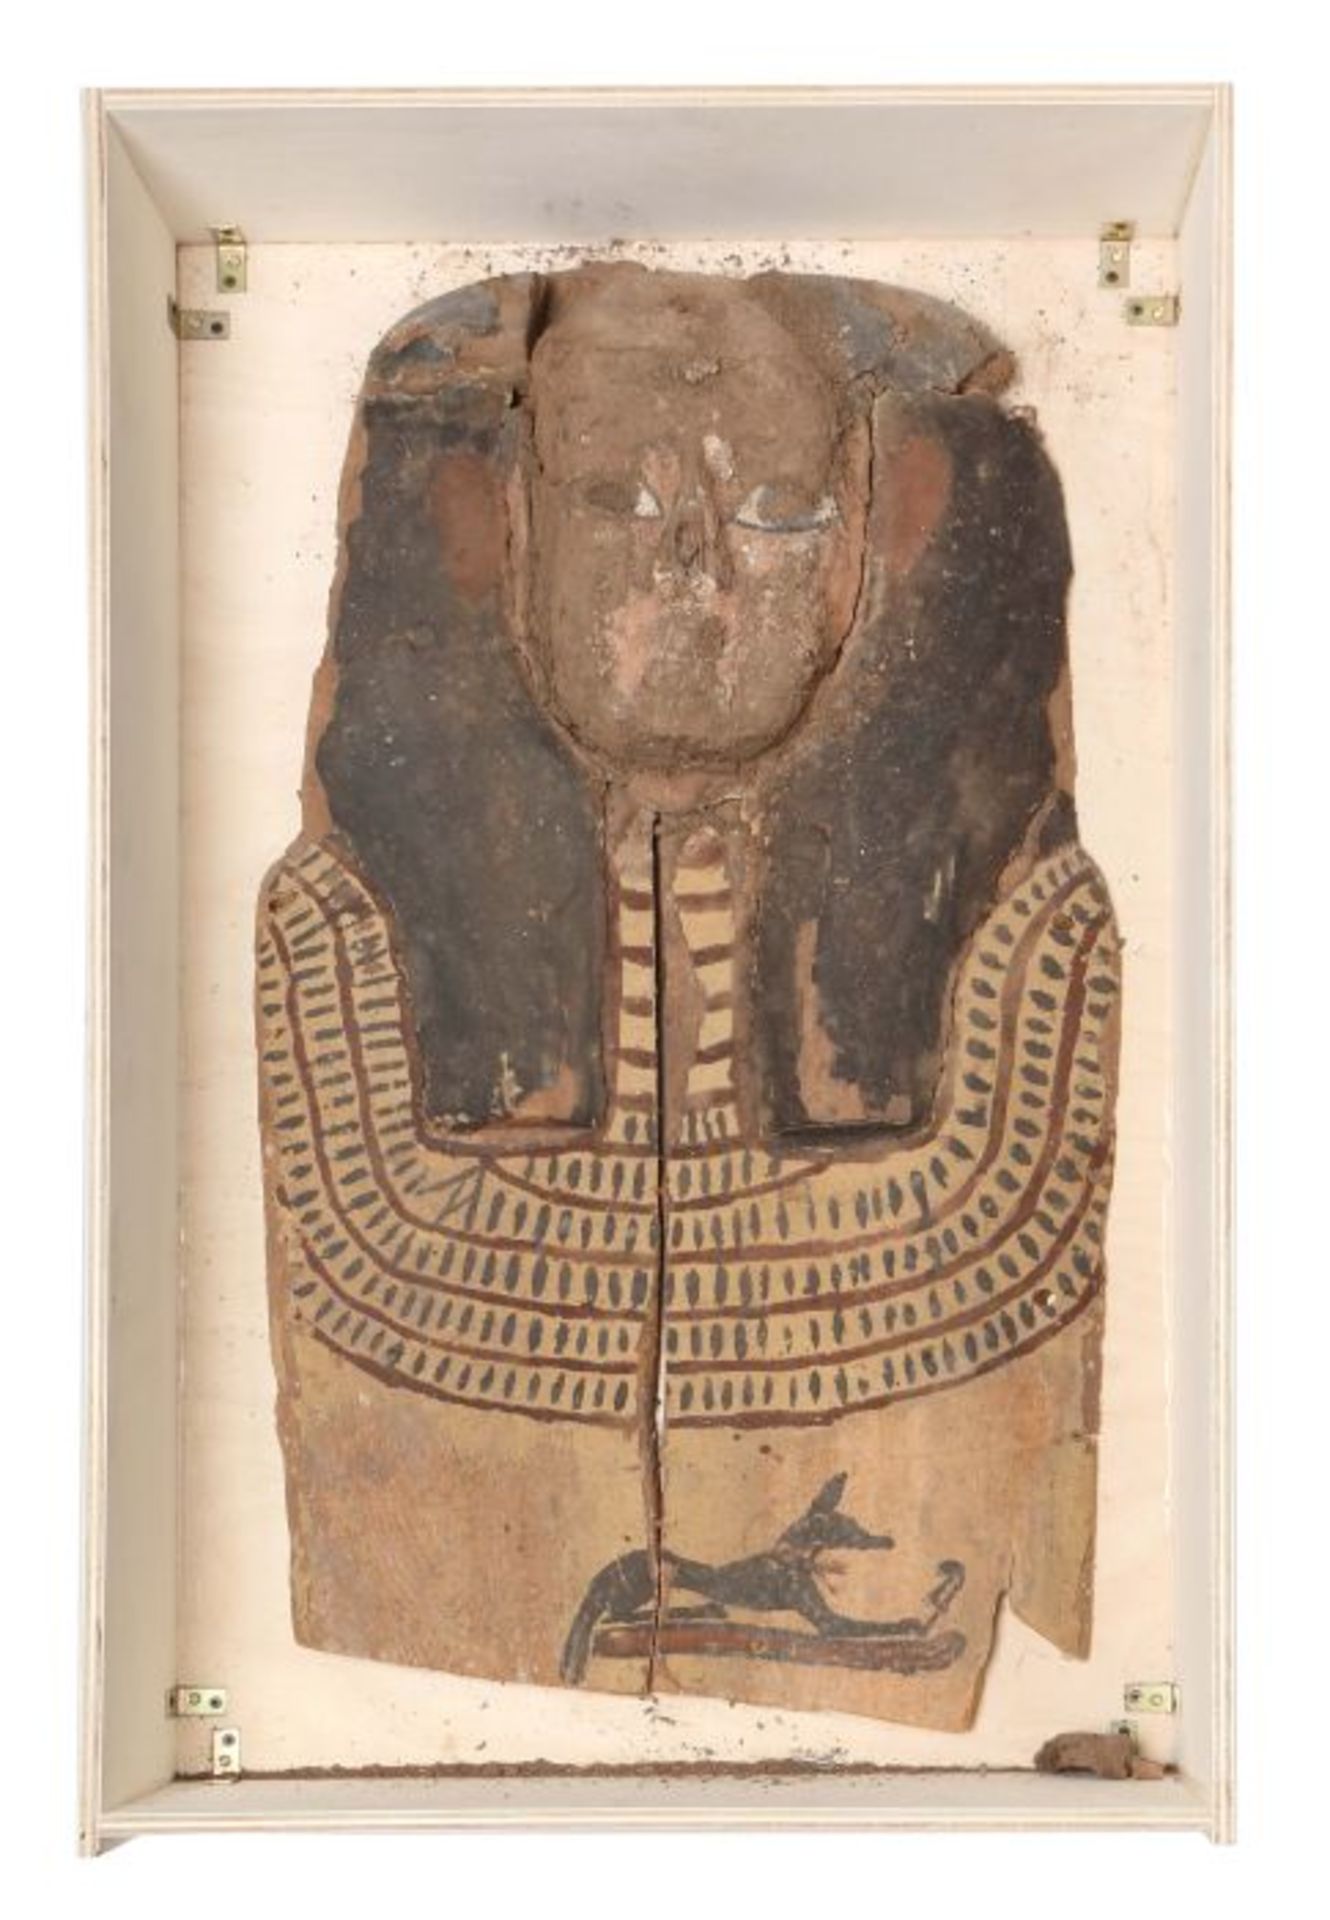 Sargdeckel-Fragment Ägypten, 4. Jh. v. Chr. oder jünger, Holz, oberes Stück eines anthropomorphen